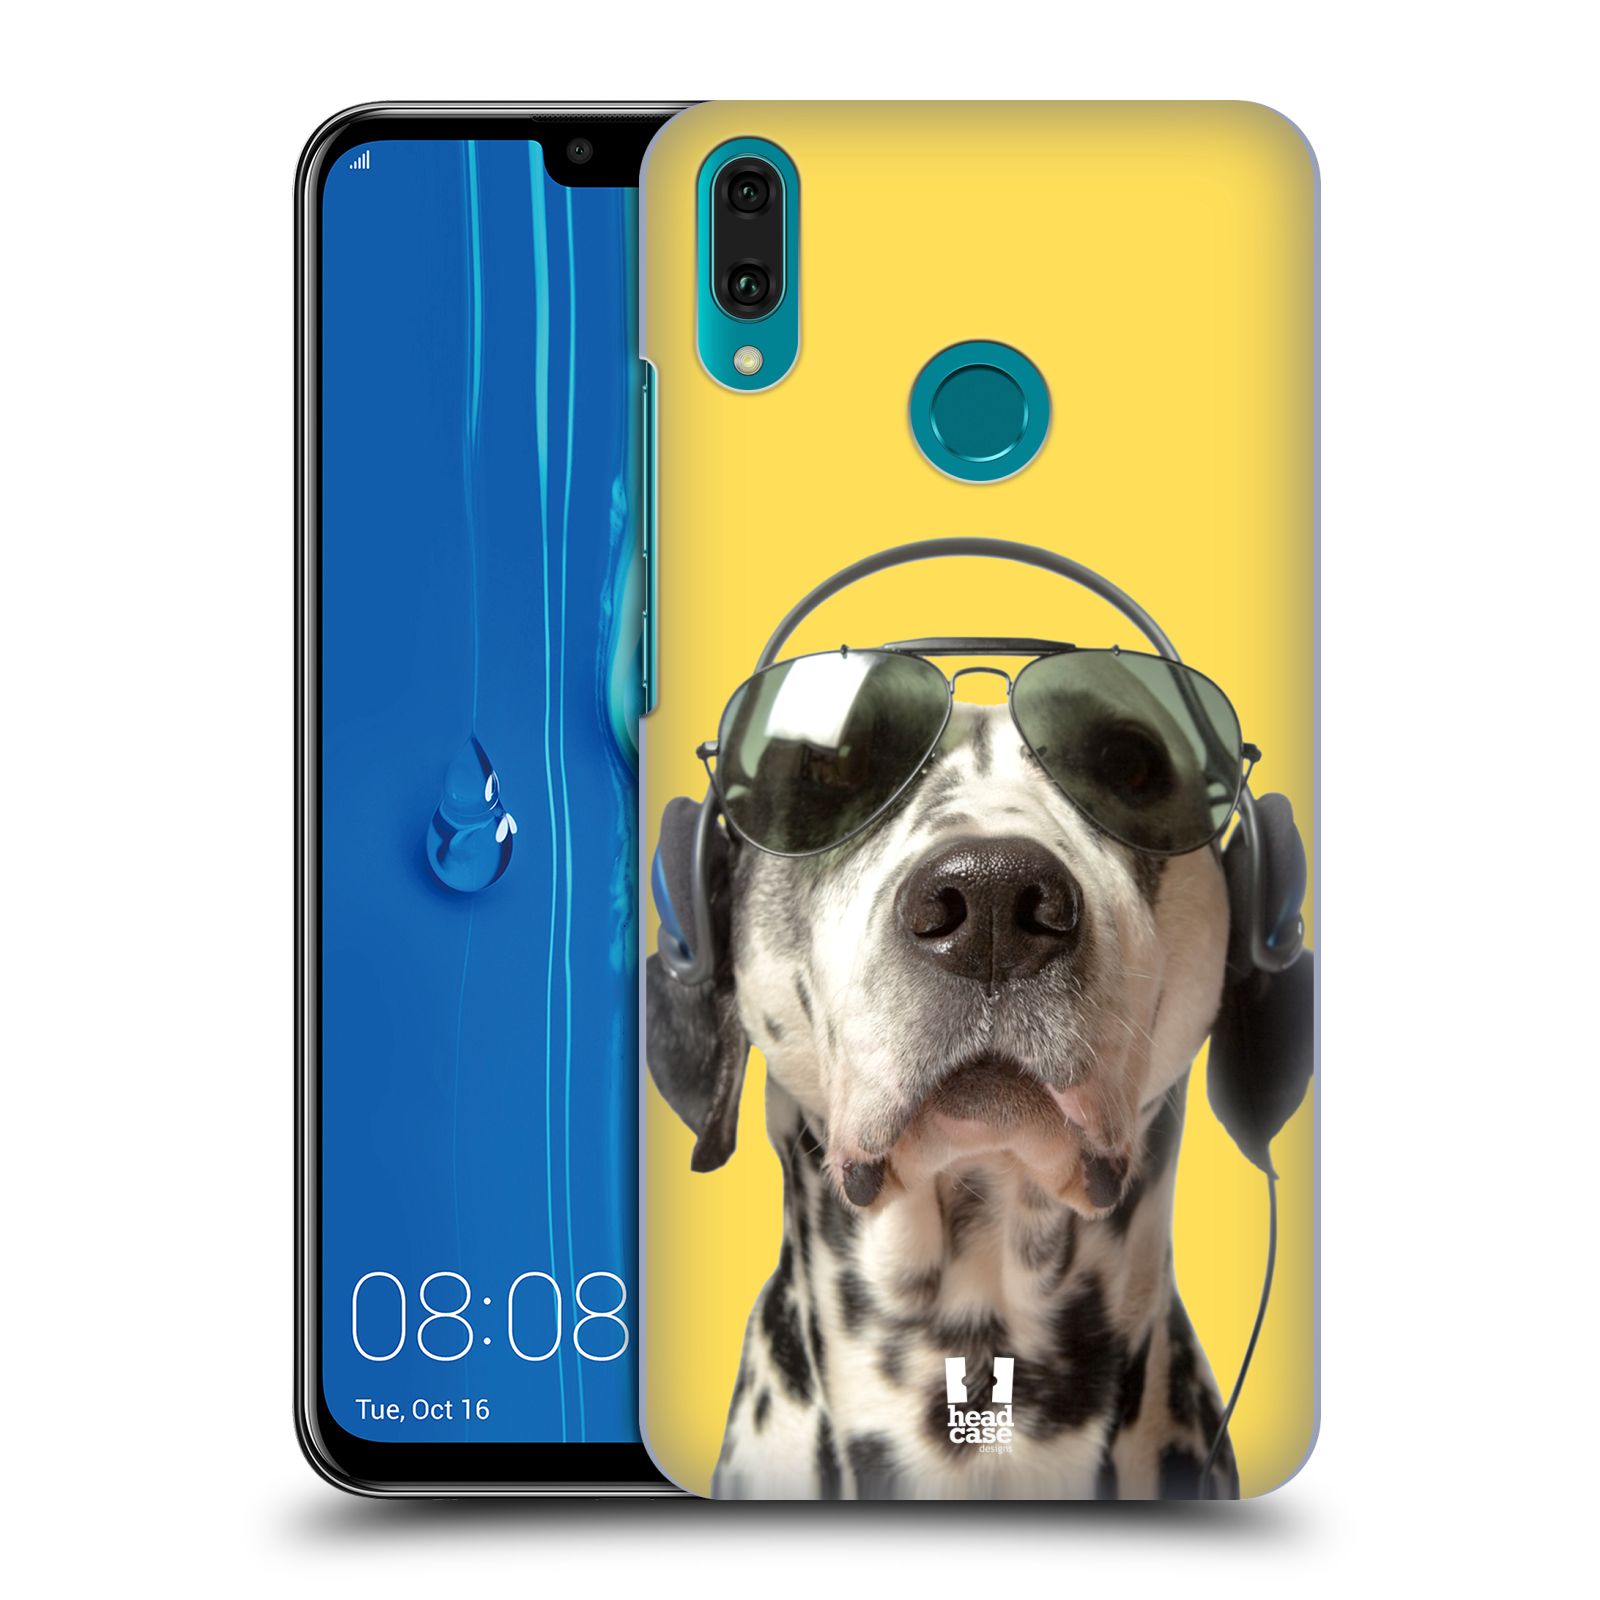 Pouzdro na mobil Huawei Y9 2019 - HEAD CASE - vzor Legrační zvířátka dalmatin se sluchátky žlutá